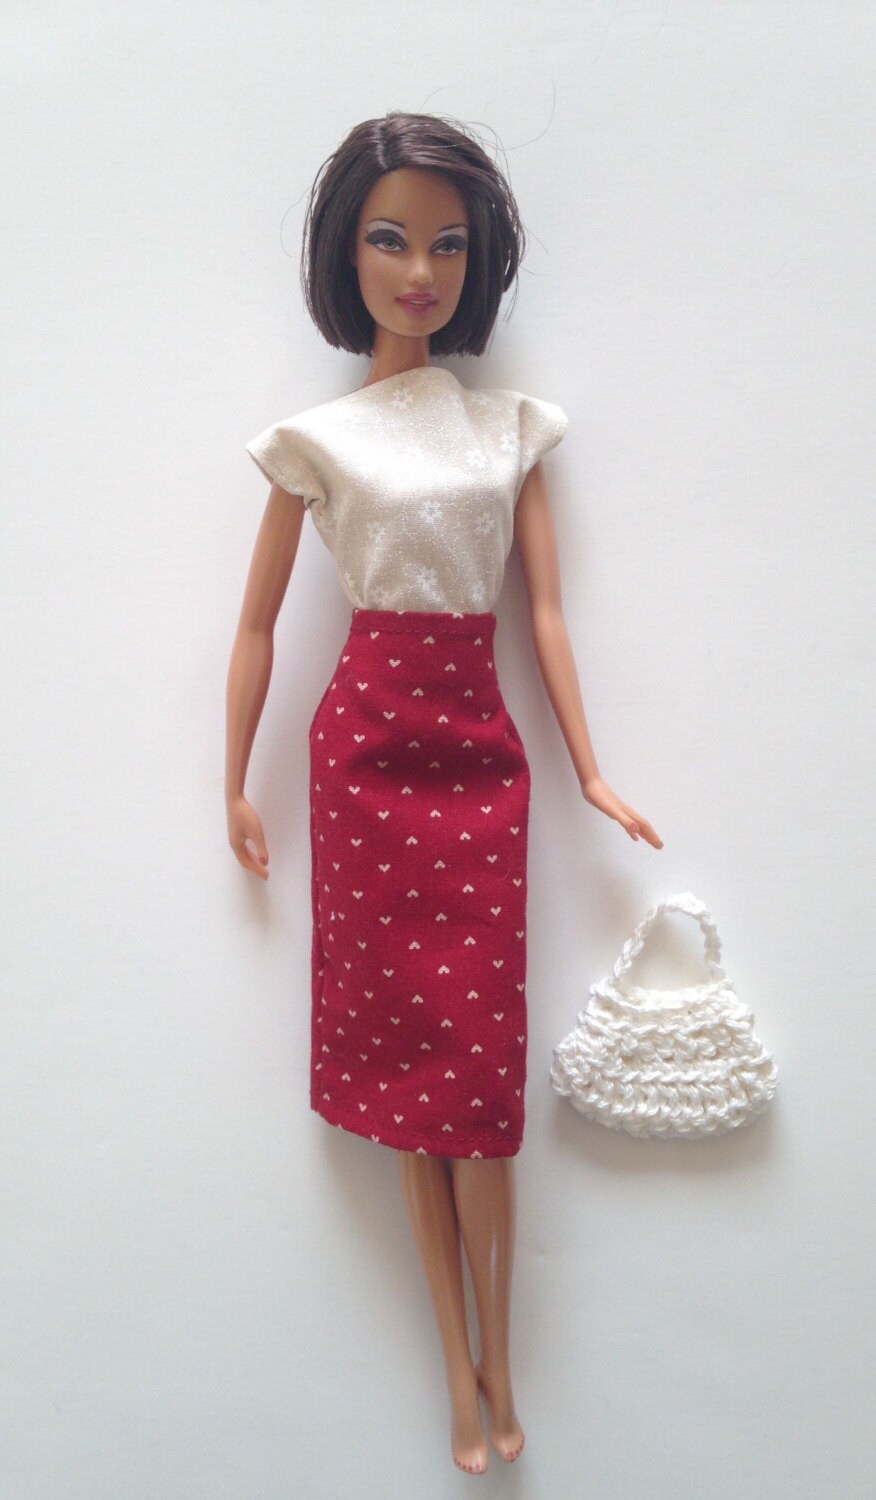 Handmade Barbie Clothes  Pencil Skirt Top Handbag Designs by P